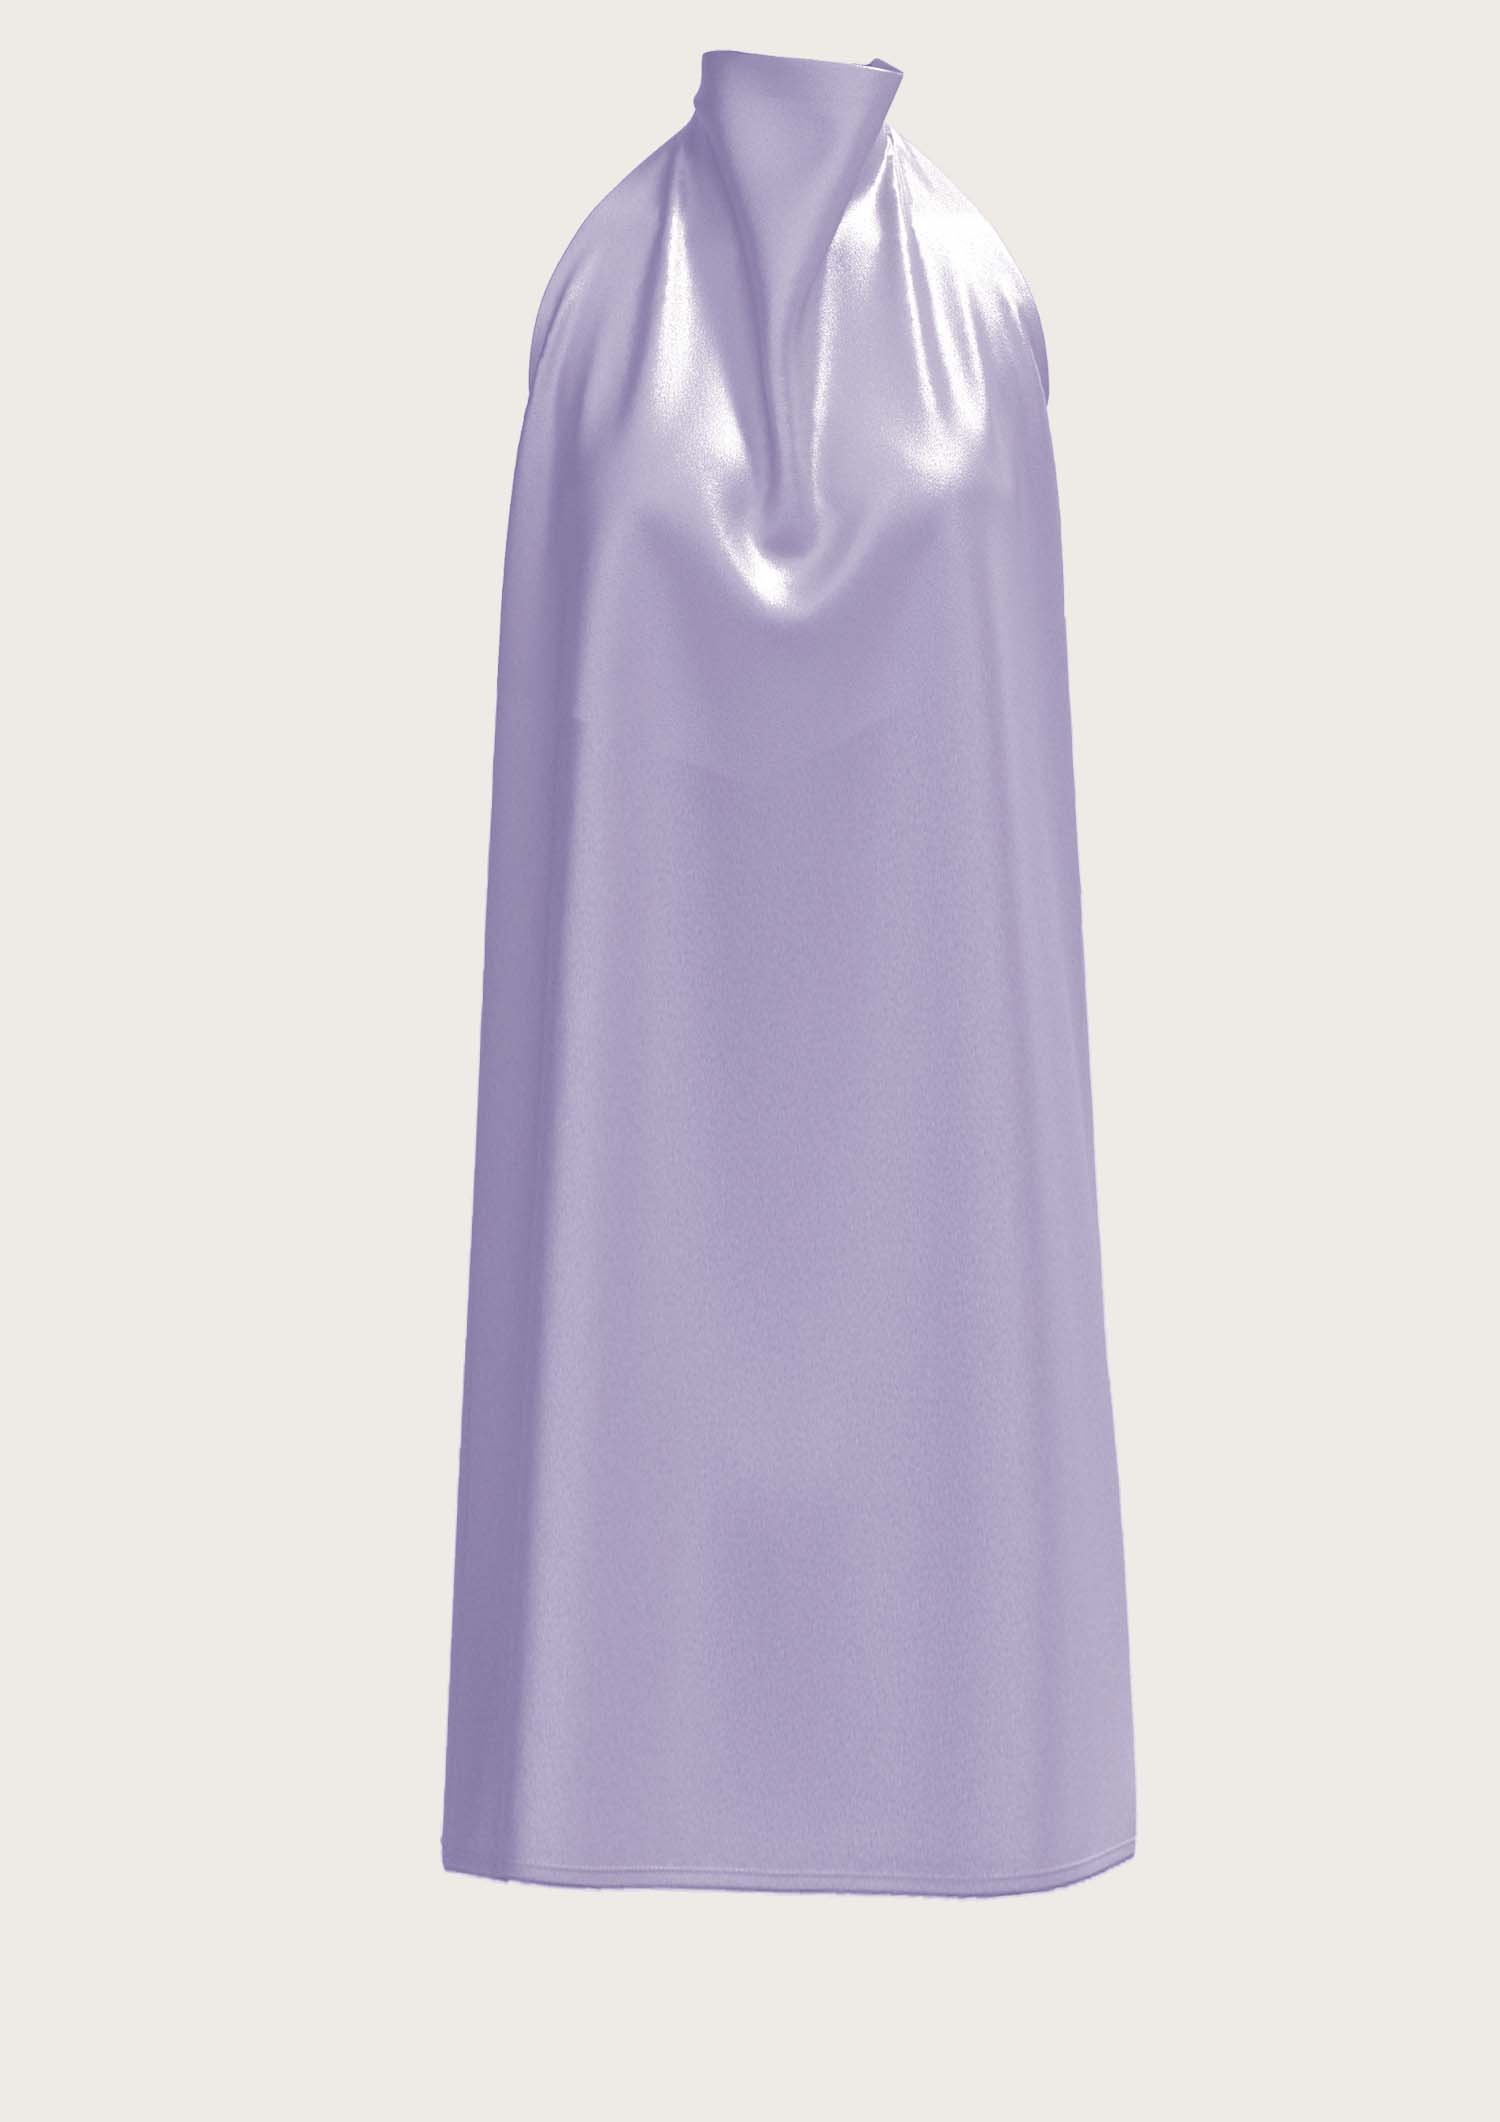 Silk Neckholder Dress Sophie in Lavender (Kopie) (Kopie) (Kopie)